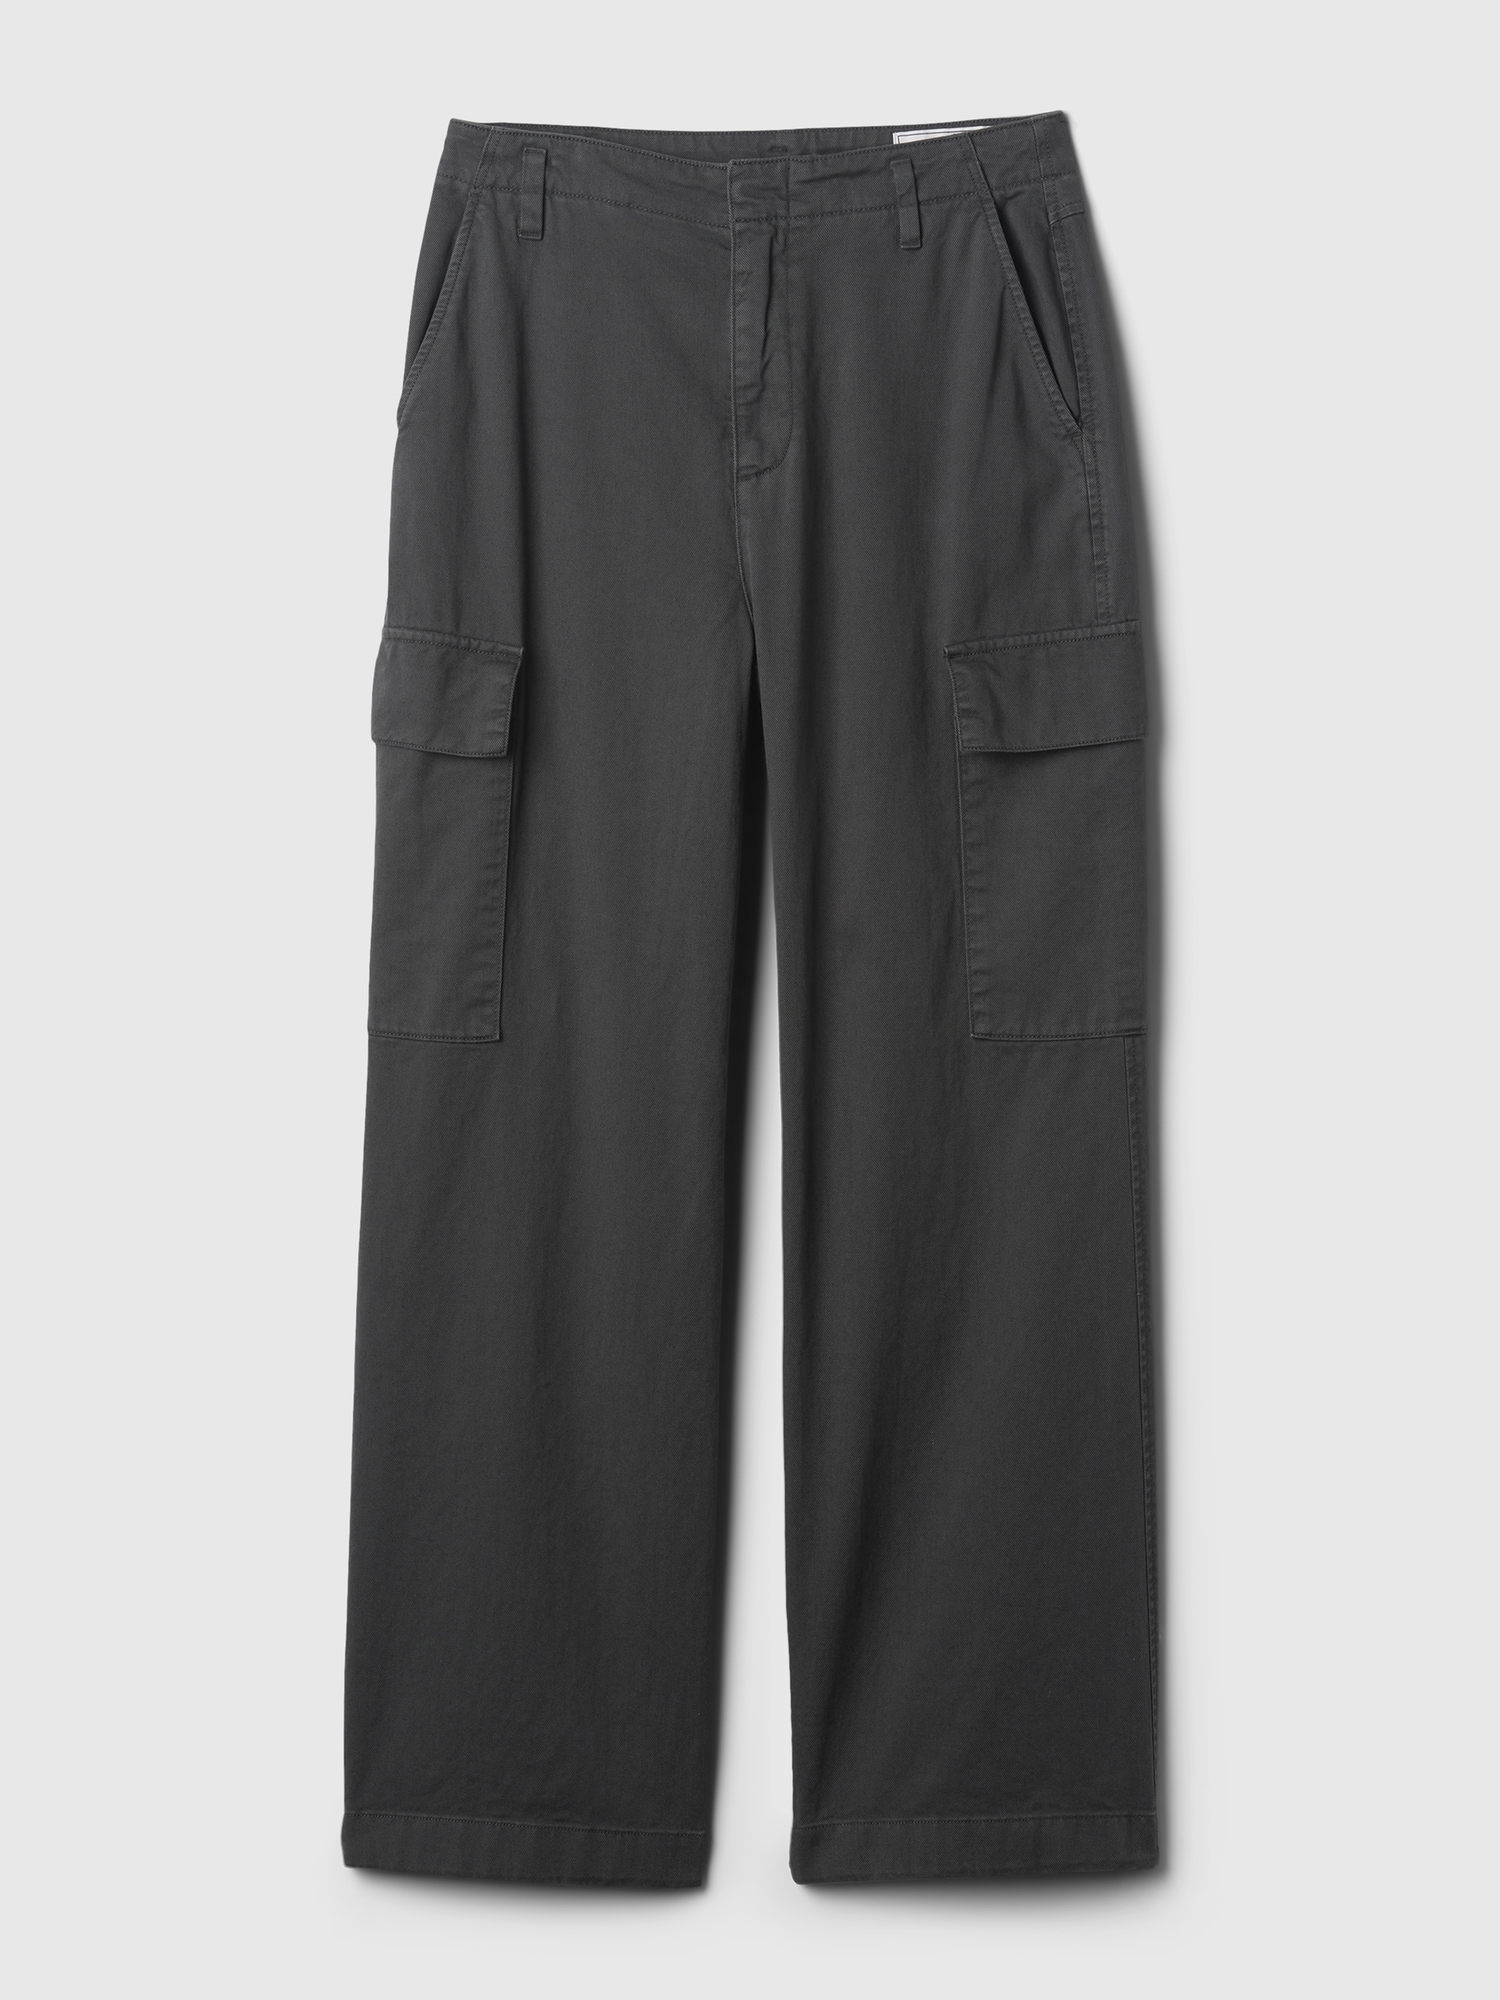 Gap Wool Cargo Pants for Men | Mercari